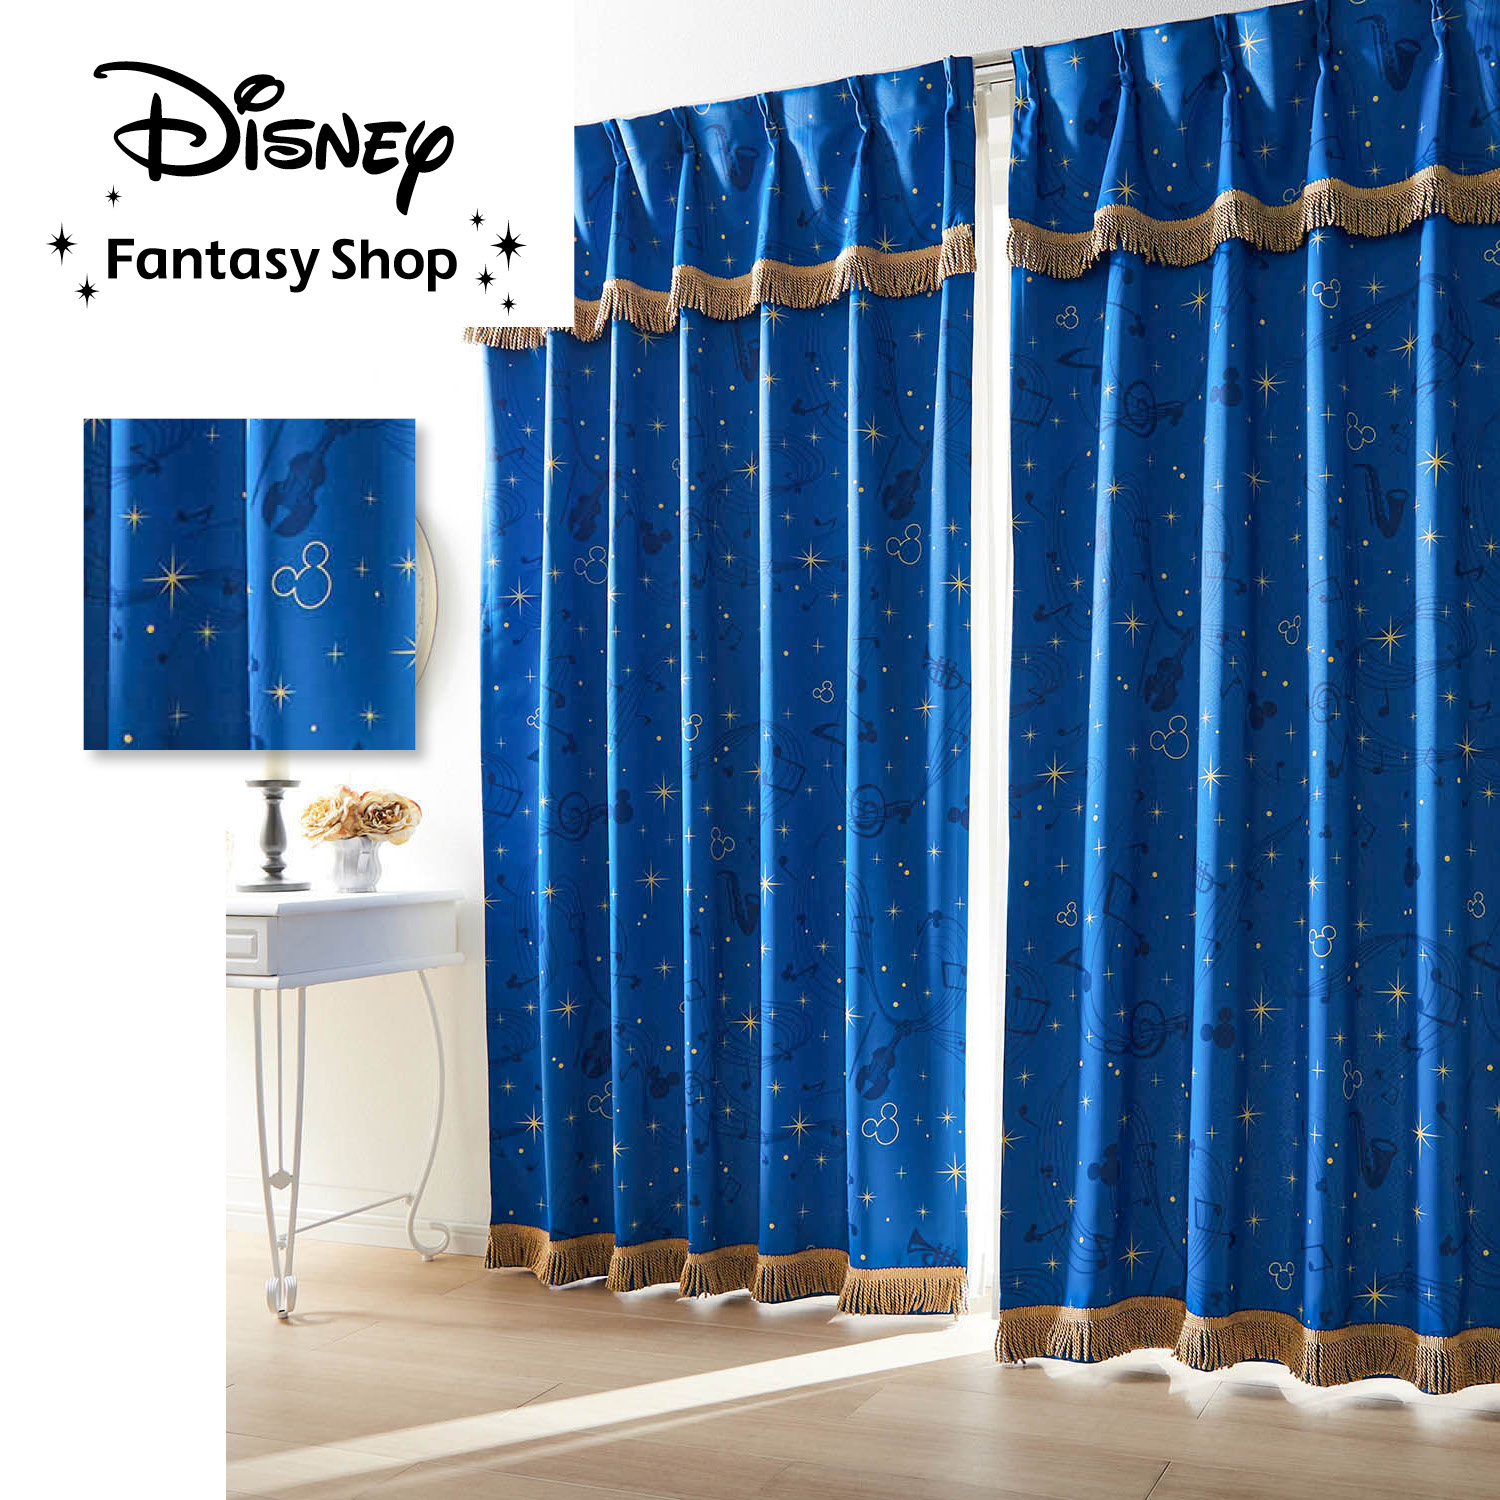 【ディズニー/Disney】【新柄登場】 緞帳のような遮光・遮熱カーテン「ミッキーモチーフ」画像